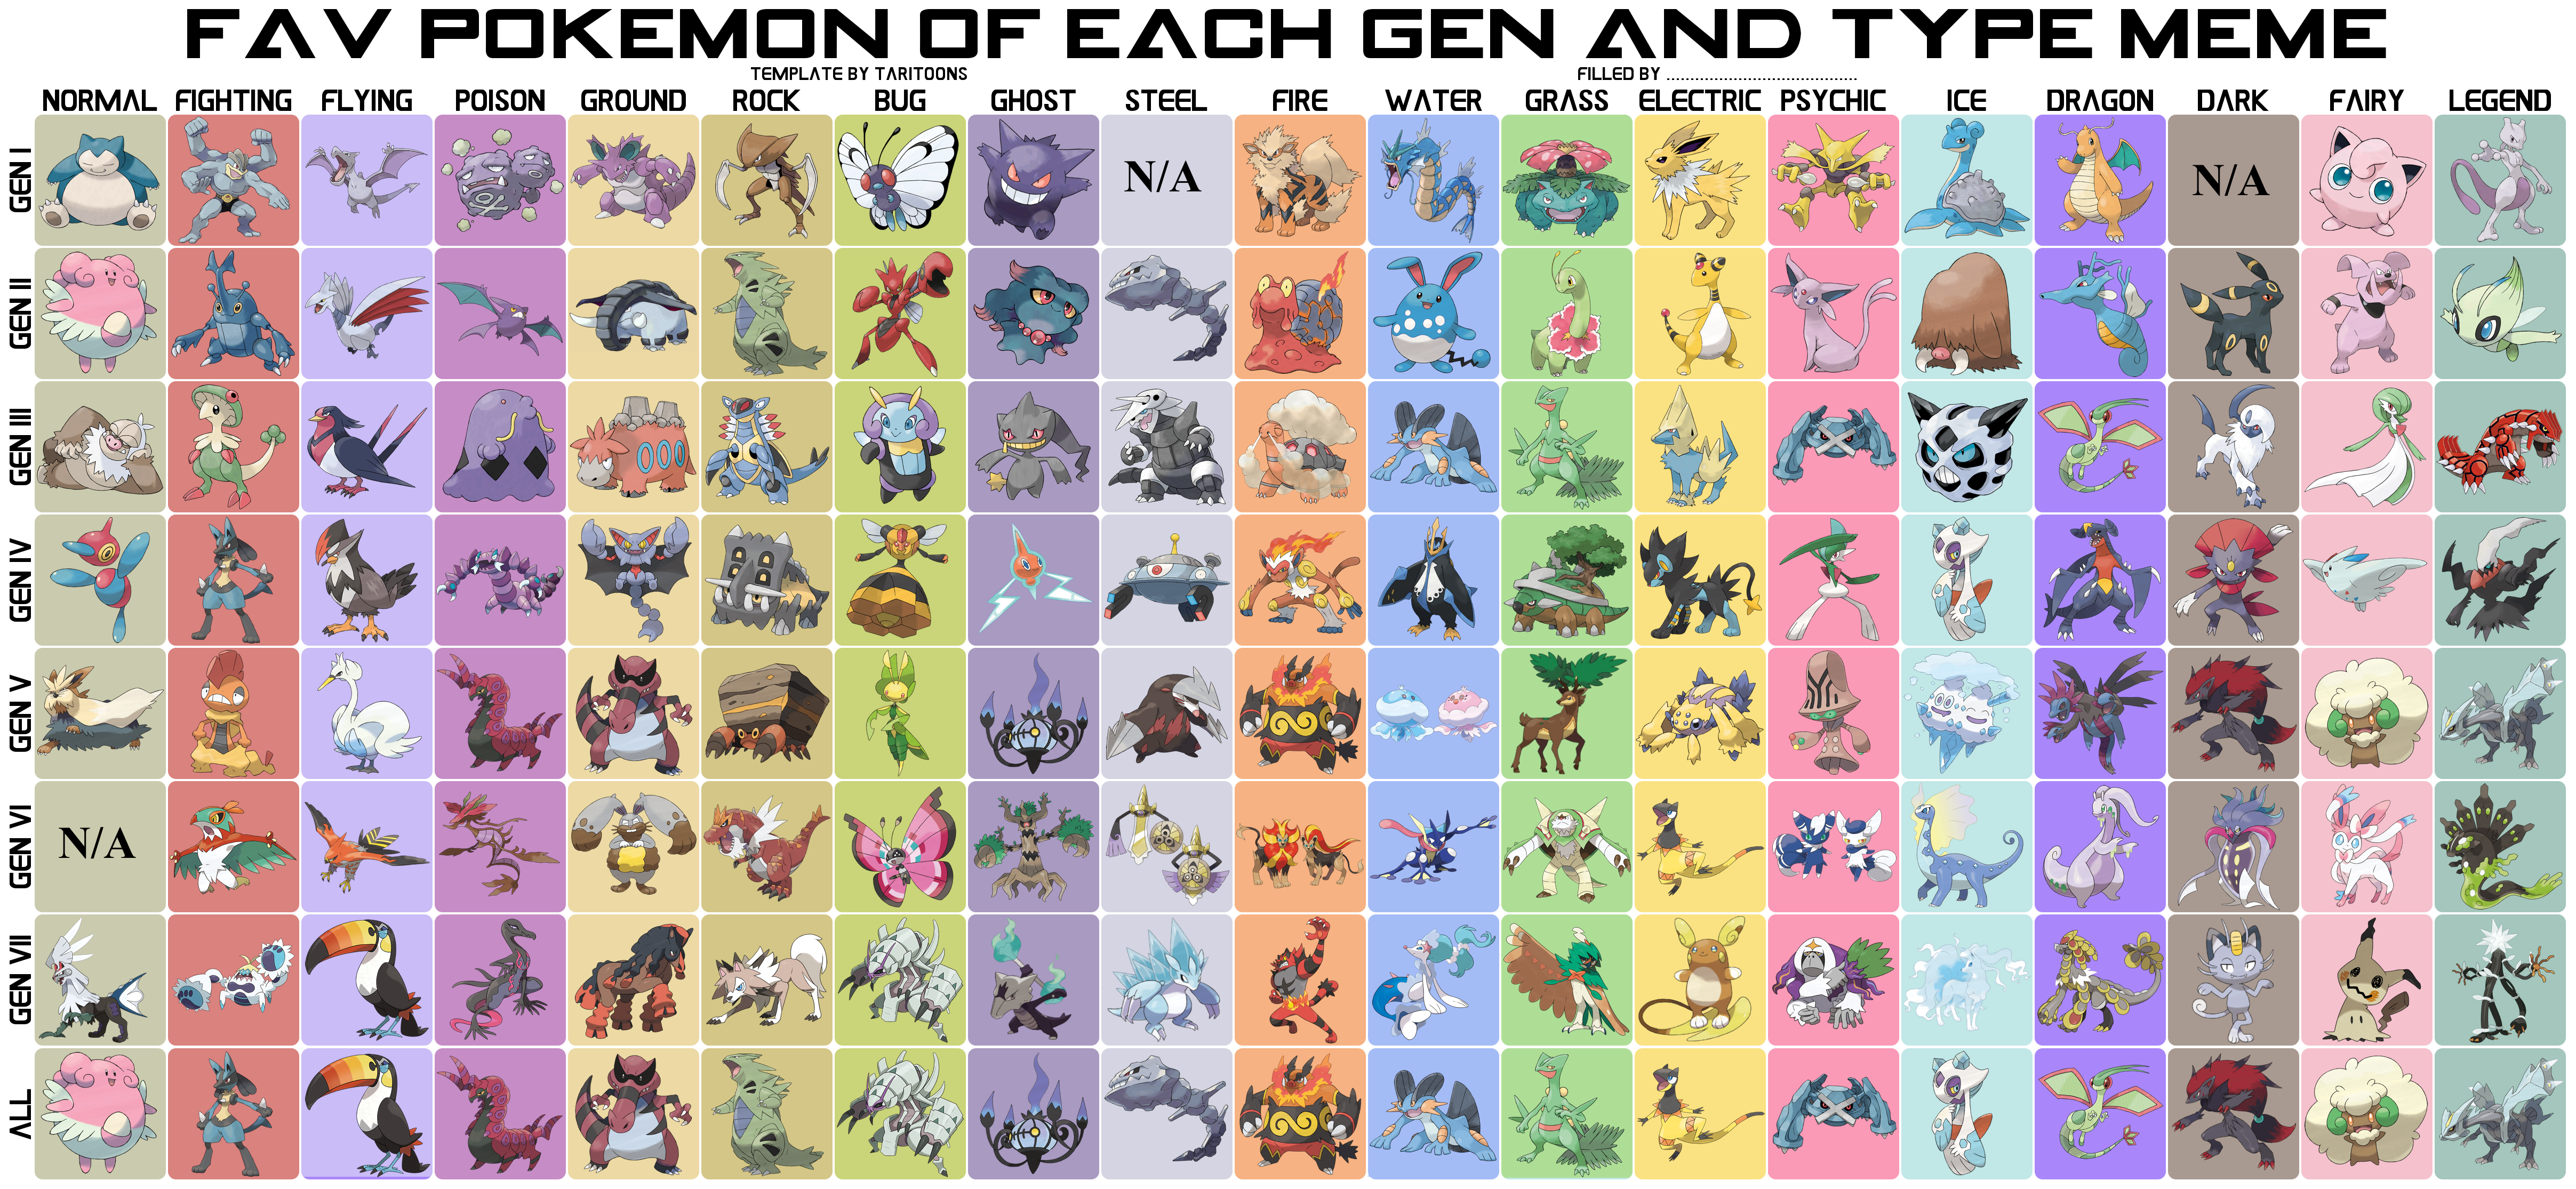 My favorite Pokémon of each type (gen 8)